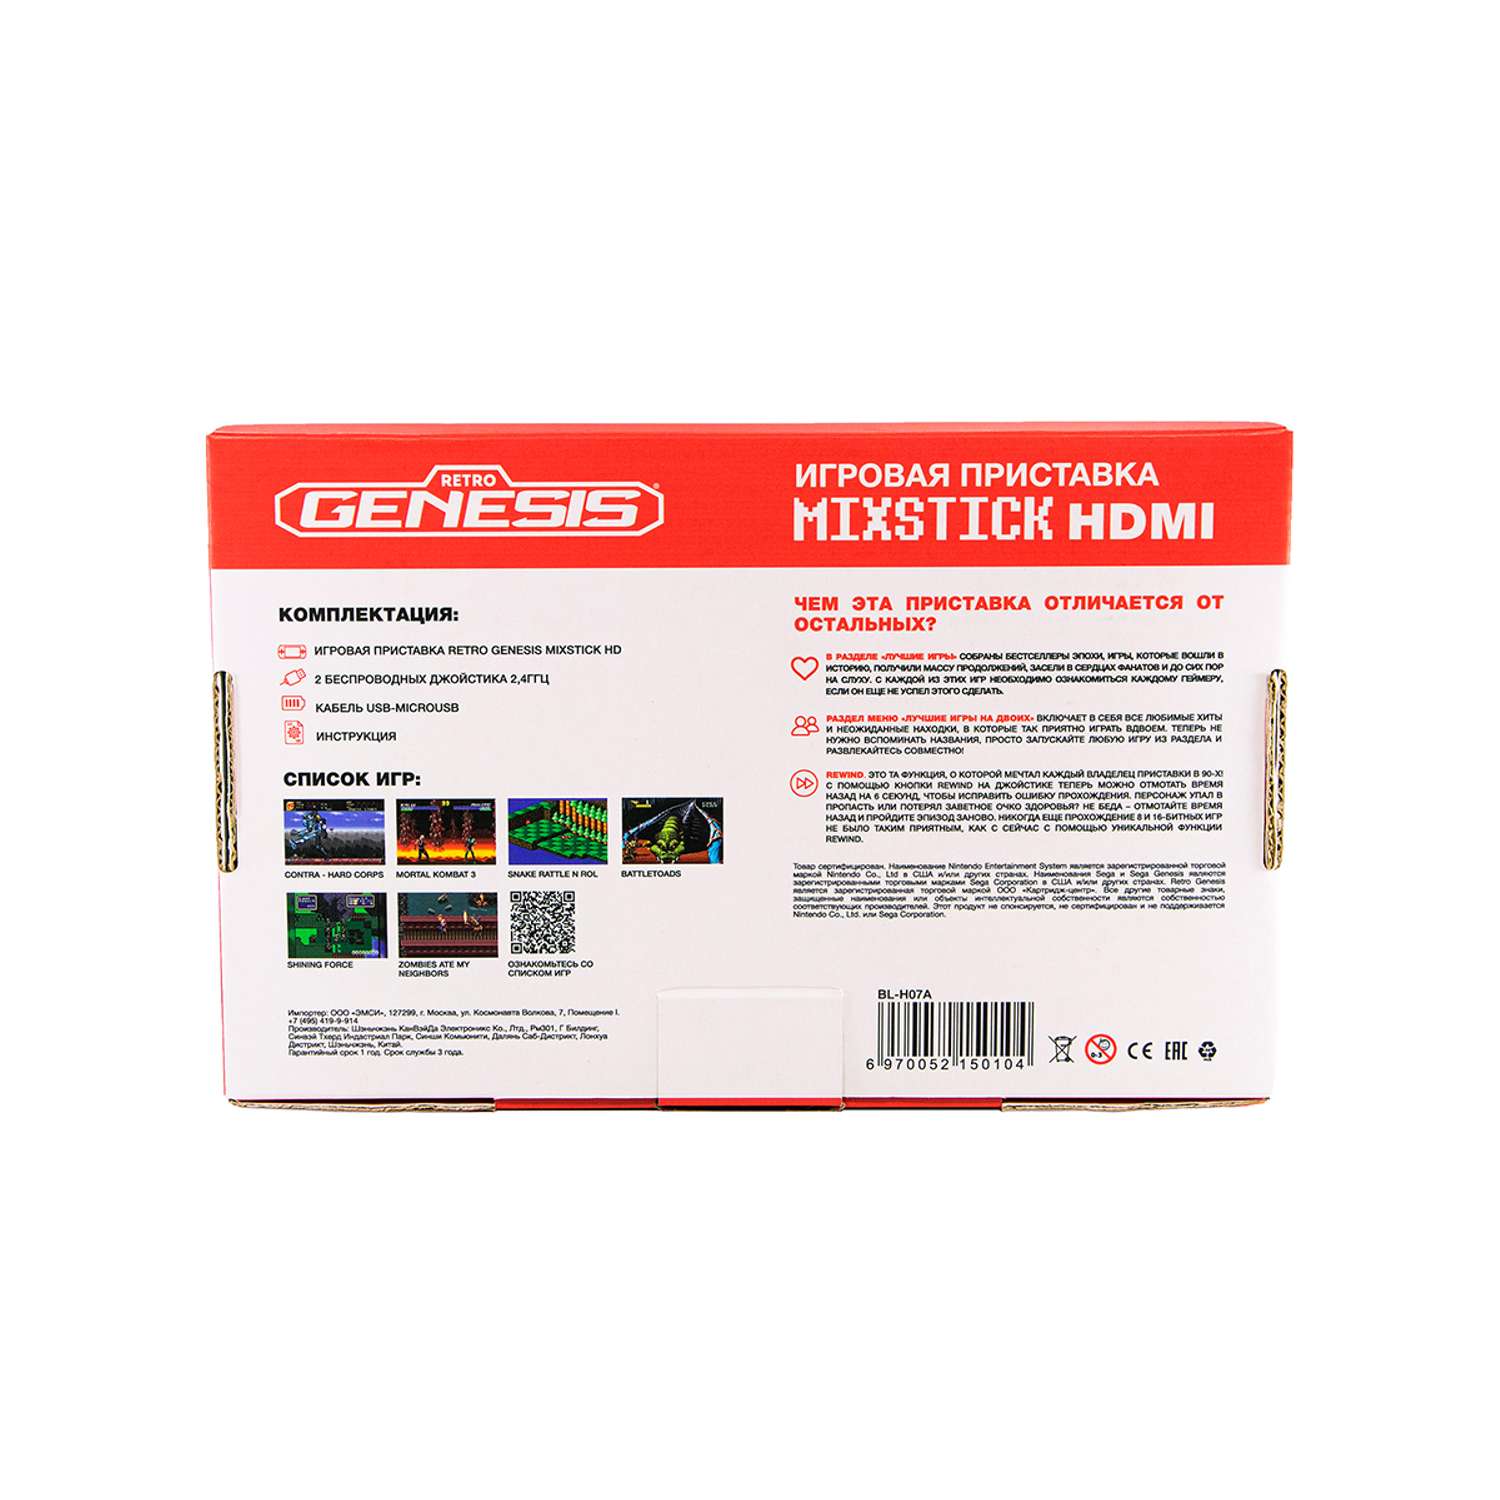 Игровая приставка для детей Retro Genesis MixStick HD 8+16Bit 900 игр +2 беспроводных джойстика - фото 3